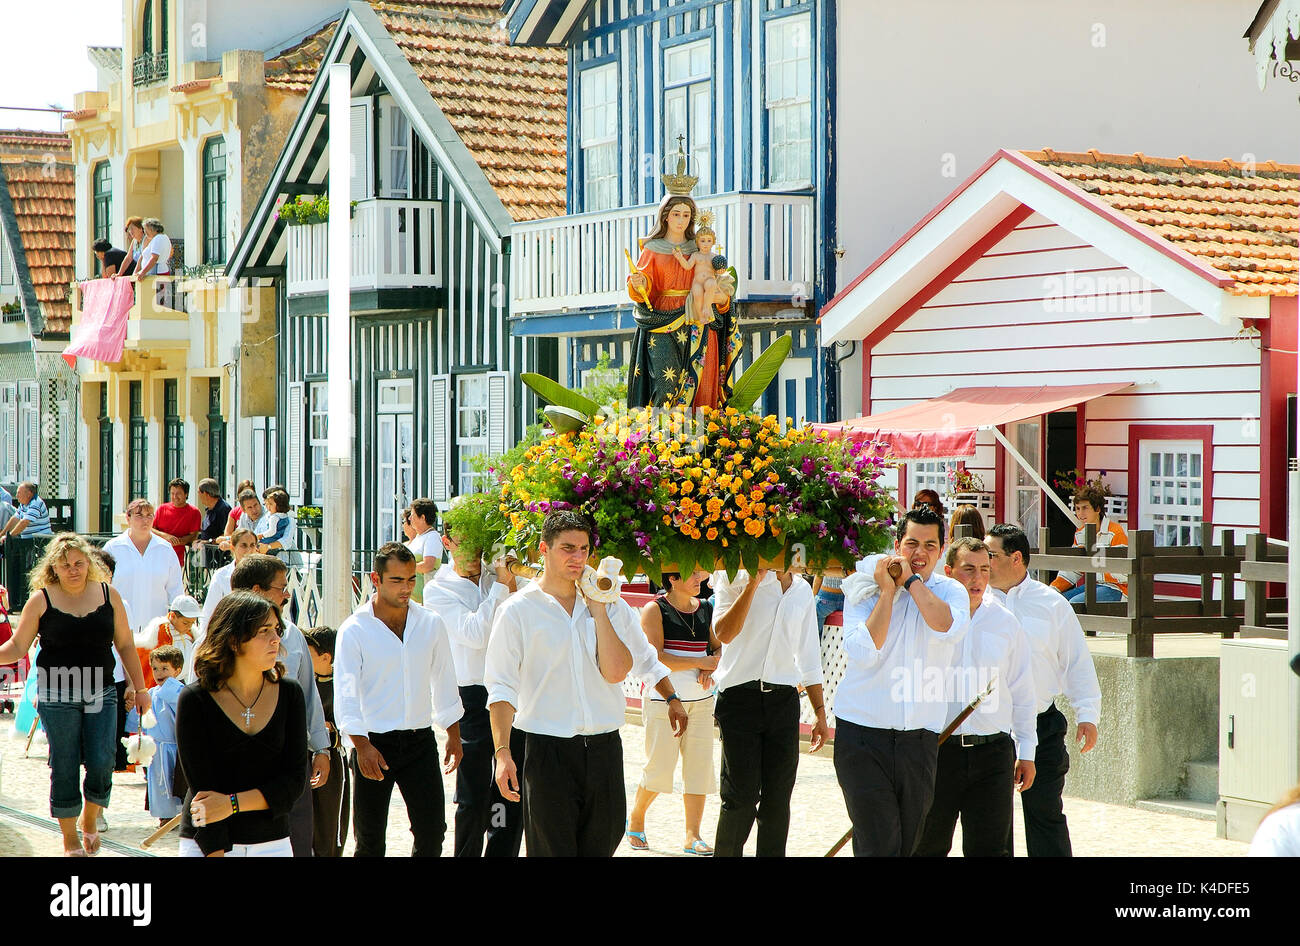 Religiöse Prozession während der traditionellen Festlichkeit von Nossa Senhora da saúde. Costa Nova, Portugal Stockfoto